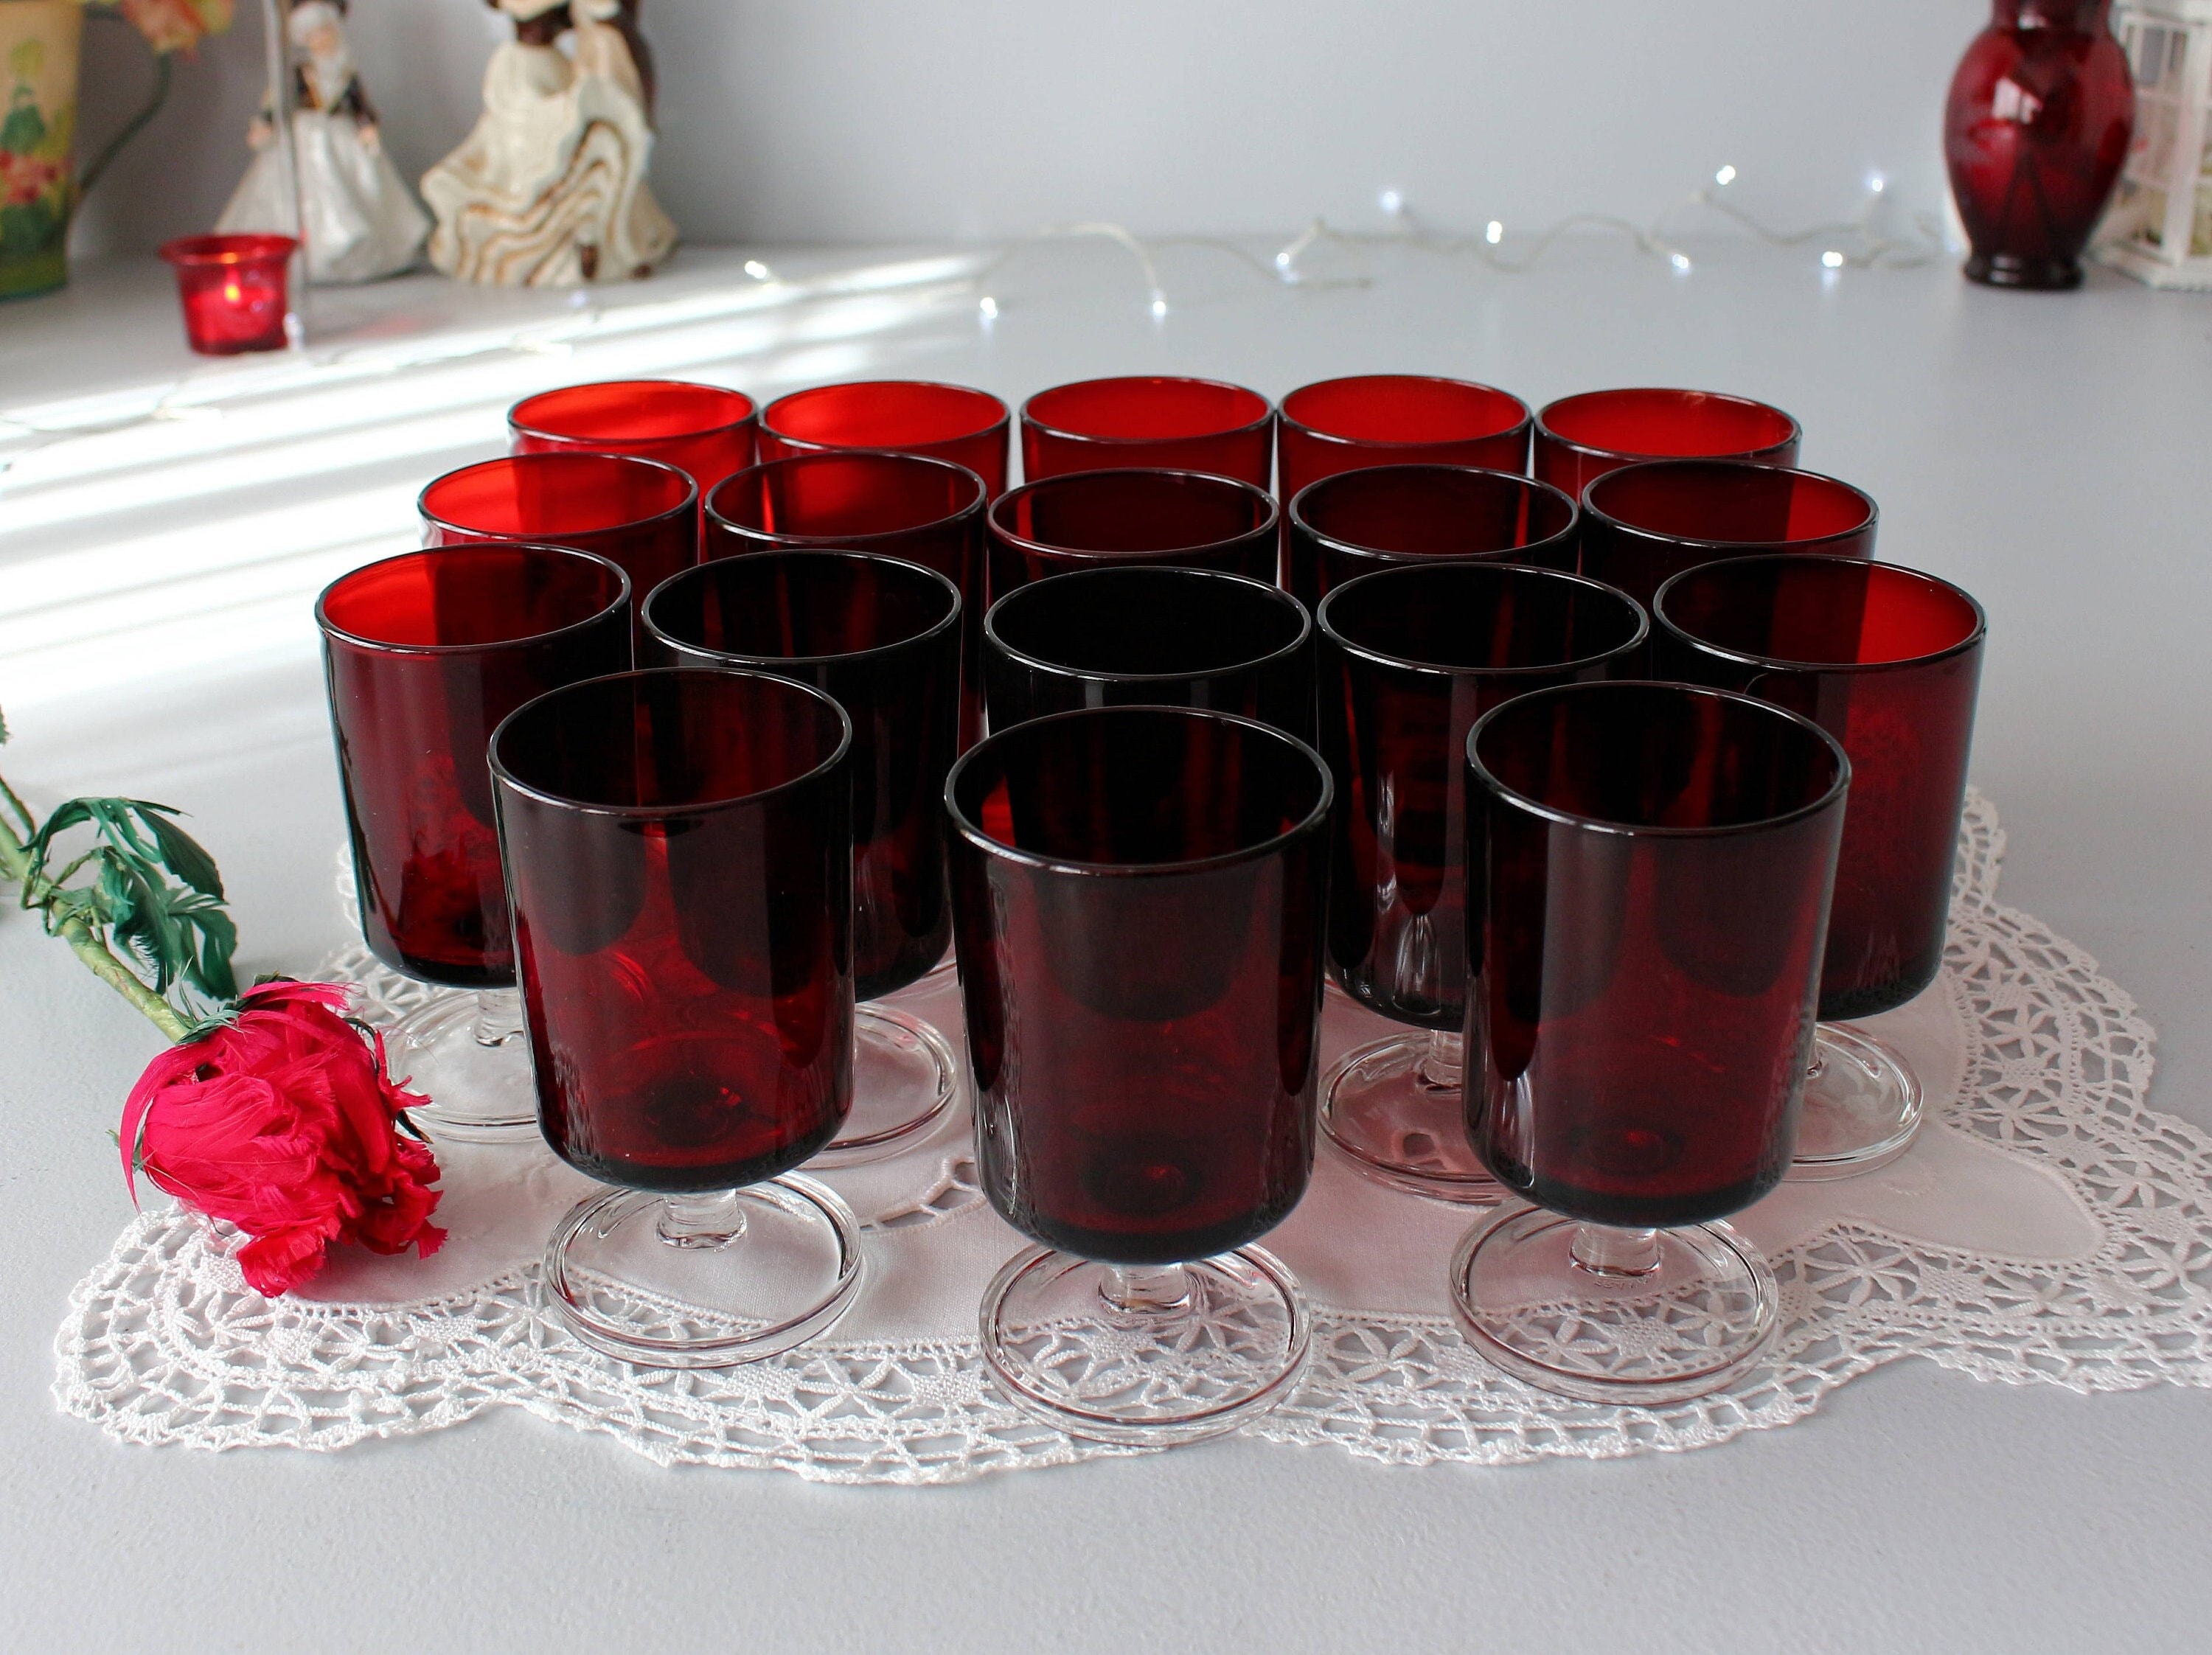 Copas de vino rojas foto de archivo. Imagen de cristal - 35372324